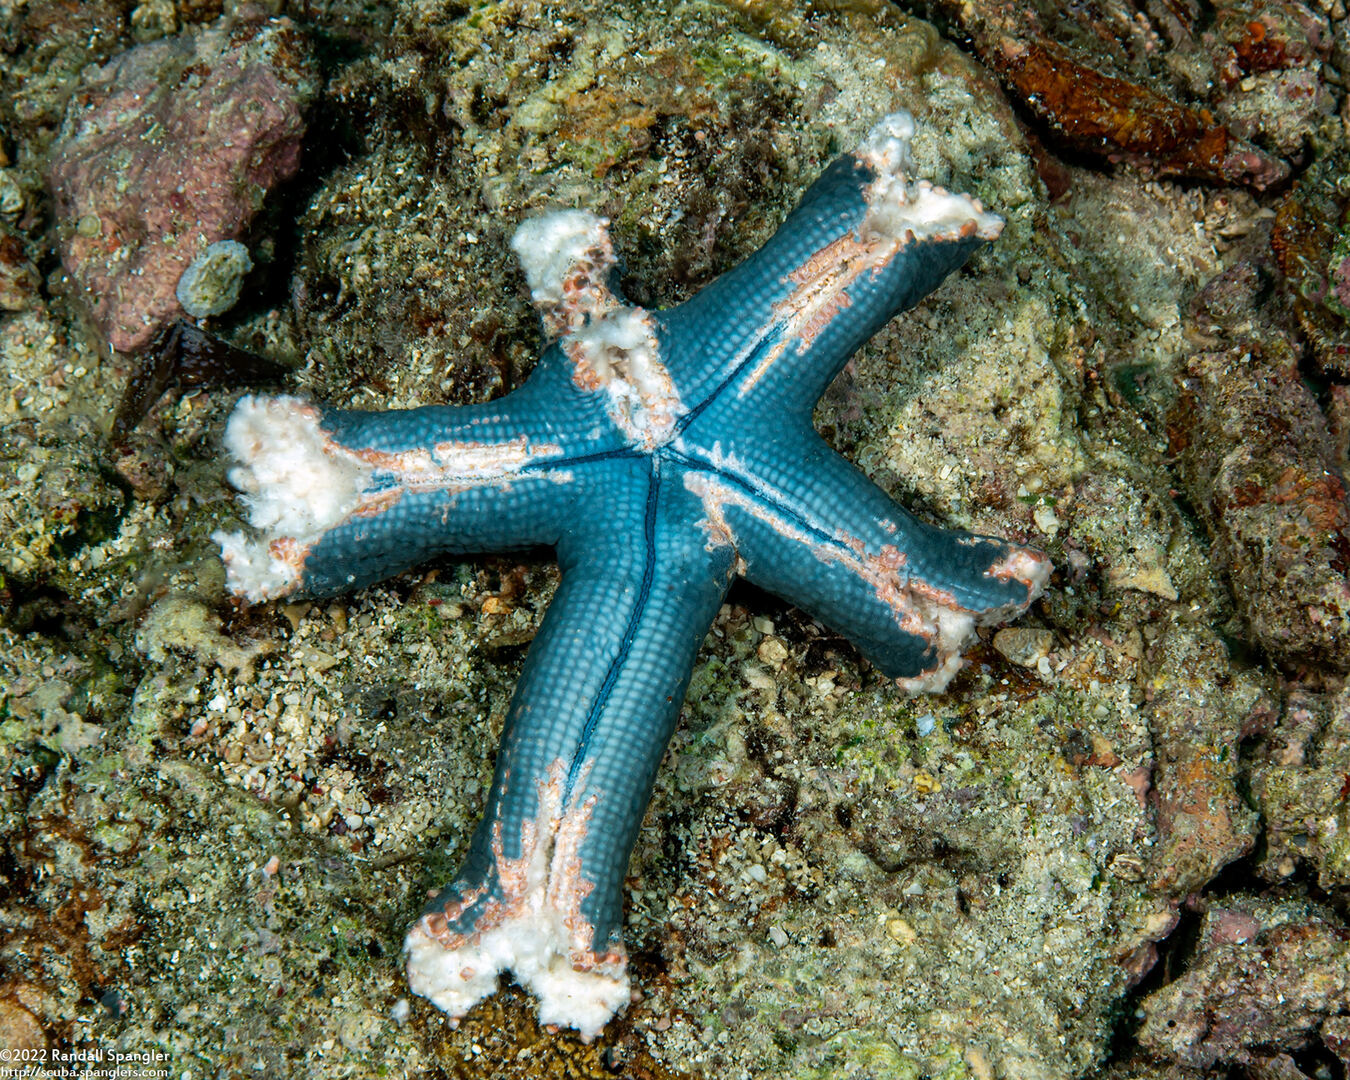 Linckia laevigata (Blue Sea Star); Chewed on